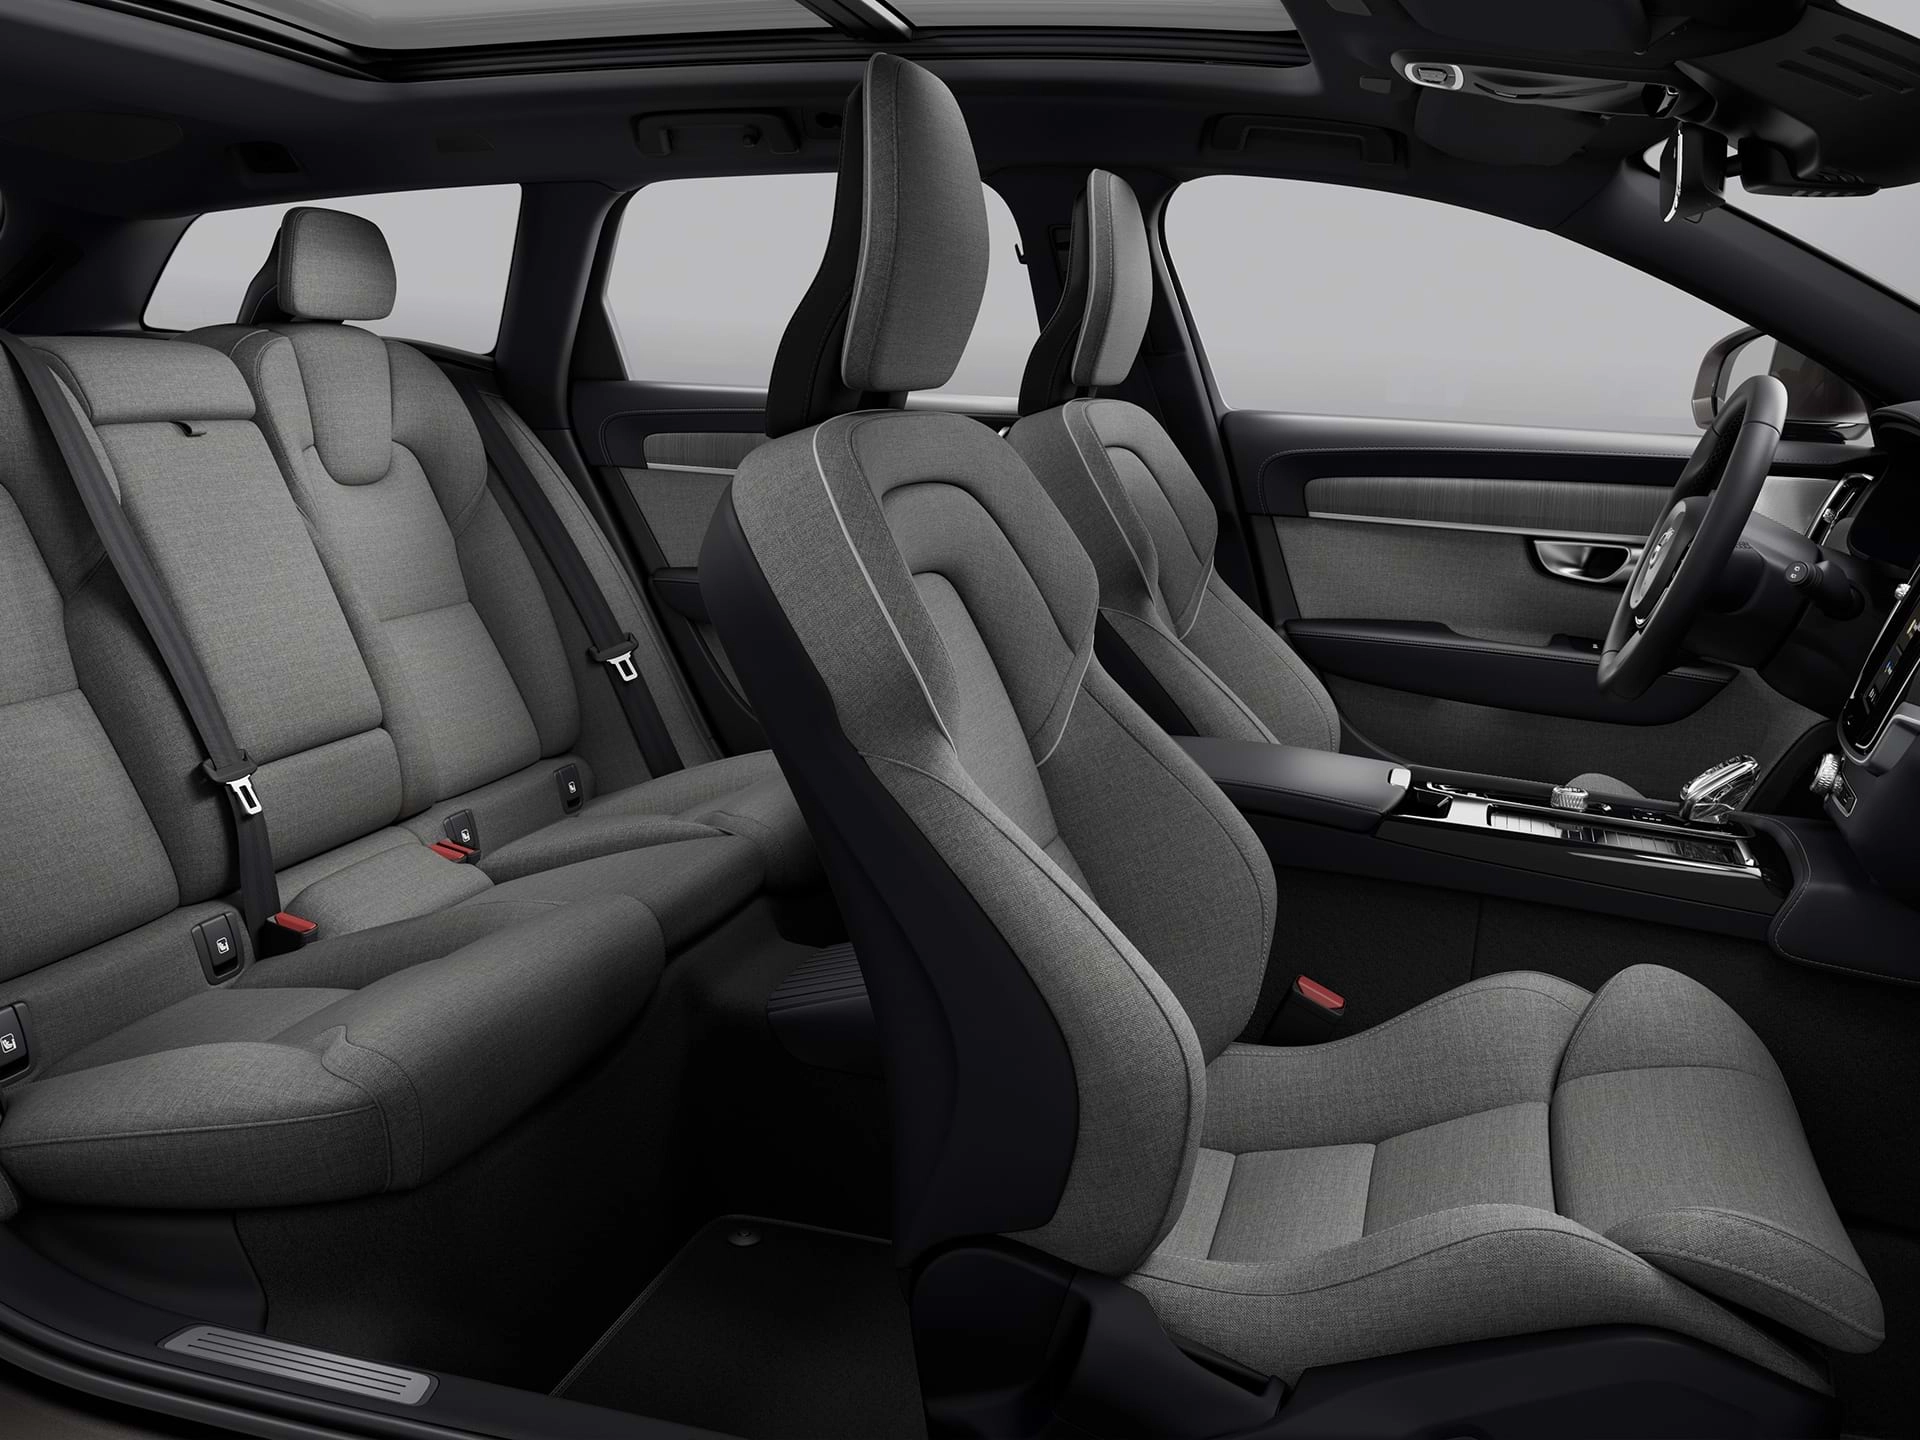 Širokouhlý pohľad na štyri čalúnené sedadlá v priestrannom interiéri vozidla Volvo kombi.